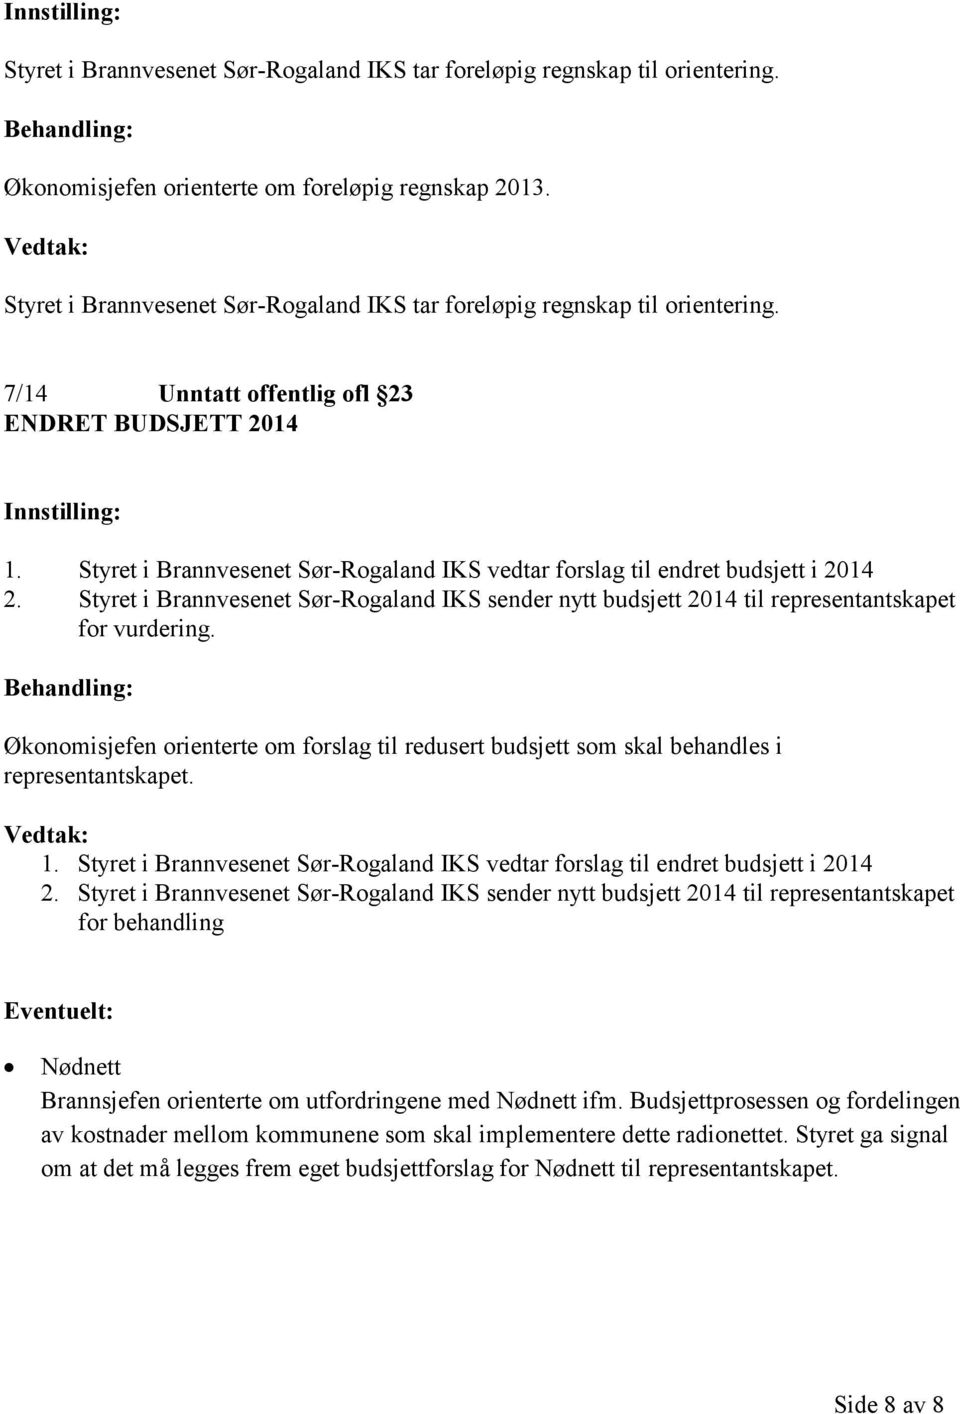 Styret i Brannvesenet Sør-Rogaland IKS vedtar forslag til endret budsjett i 2014 2. Styret i Brannvesenet Sør-Rogaland IKS sender nytt budsjett 2014 til representantskapet for vurdering.